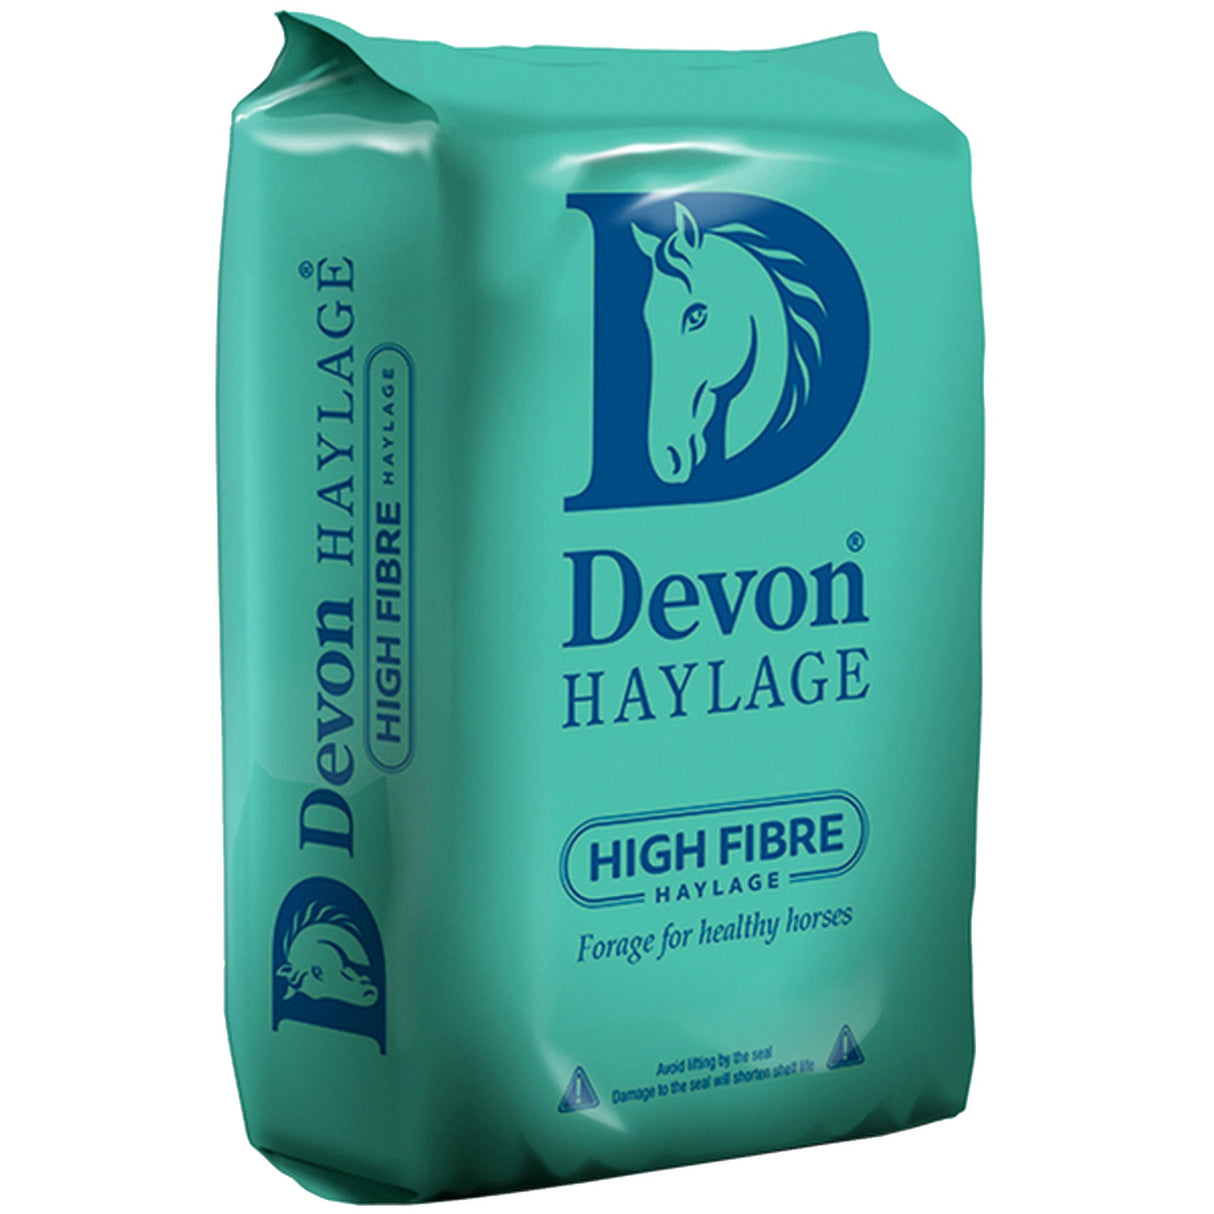 Devon Haylage High Fibre Ryegrass